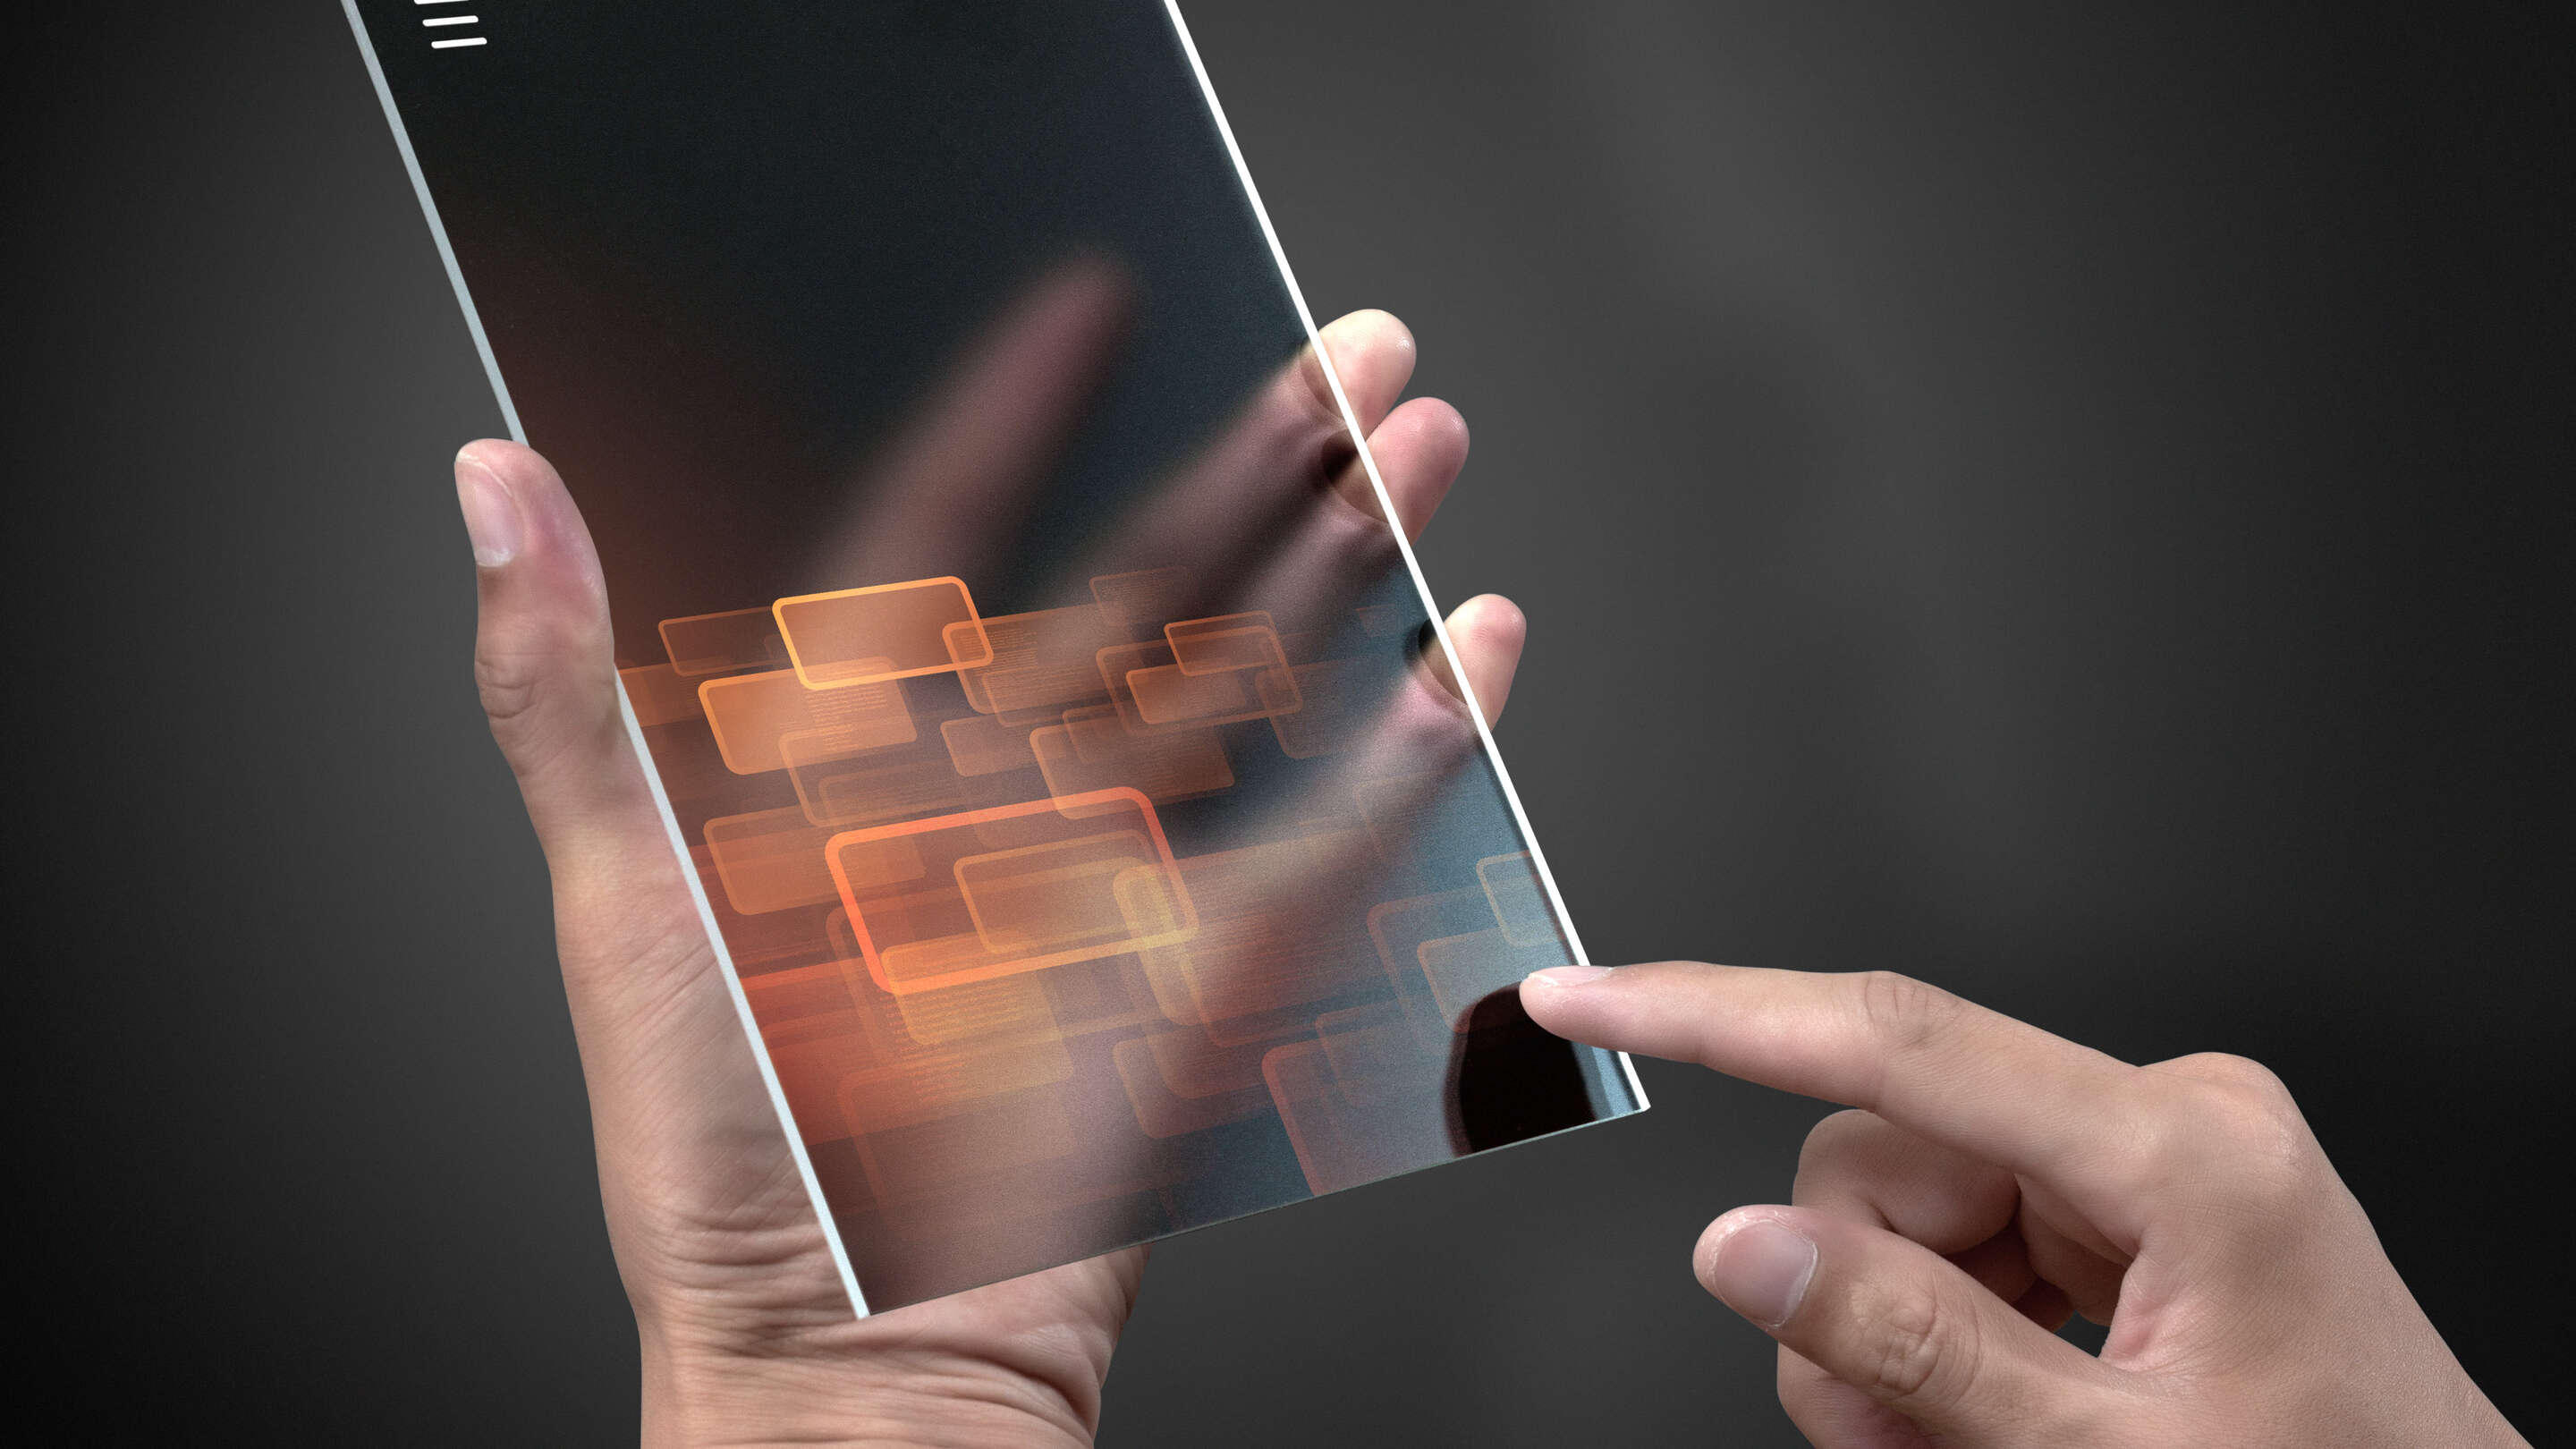 Desenvolvimento - Prototipando uma pessoa tocando um dispositivo transparente